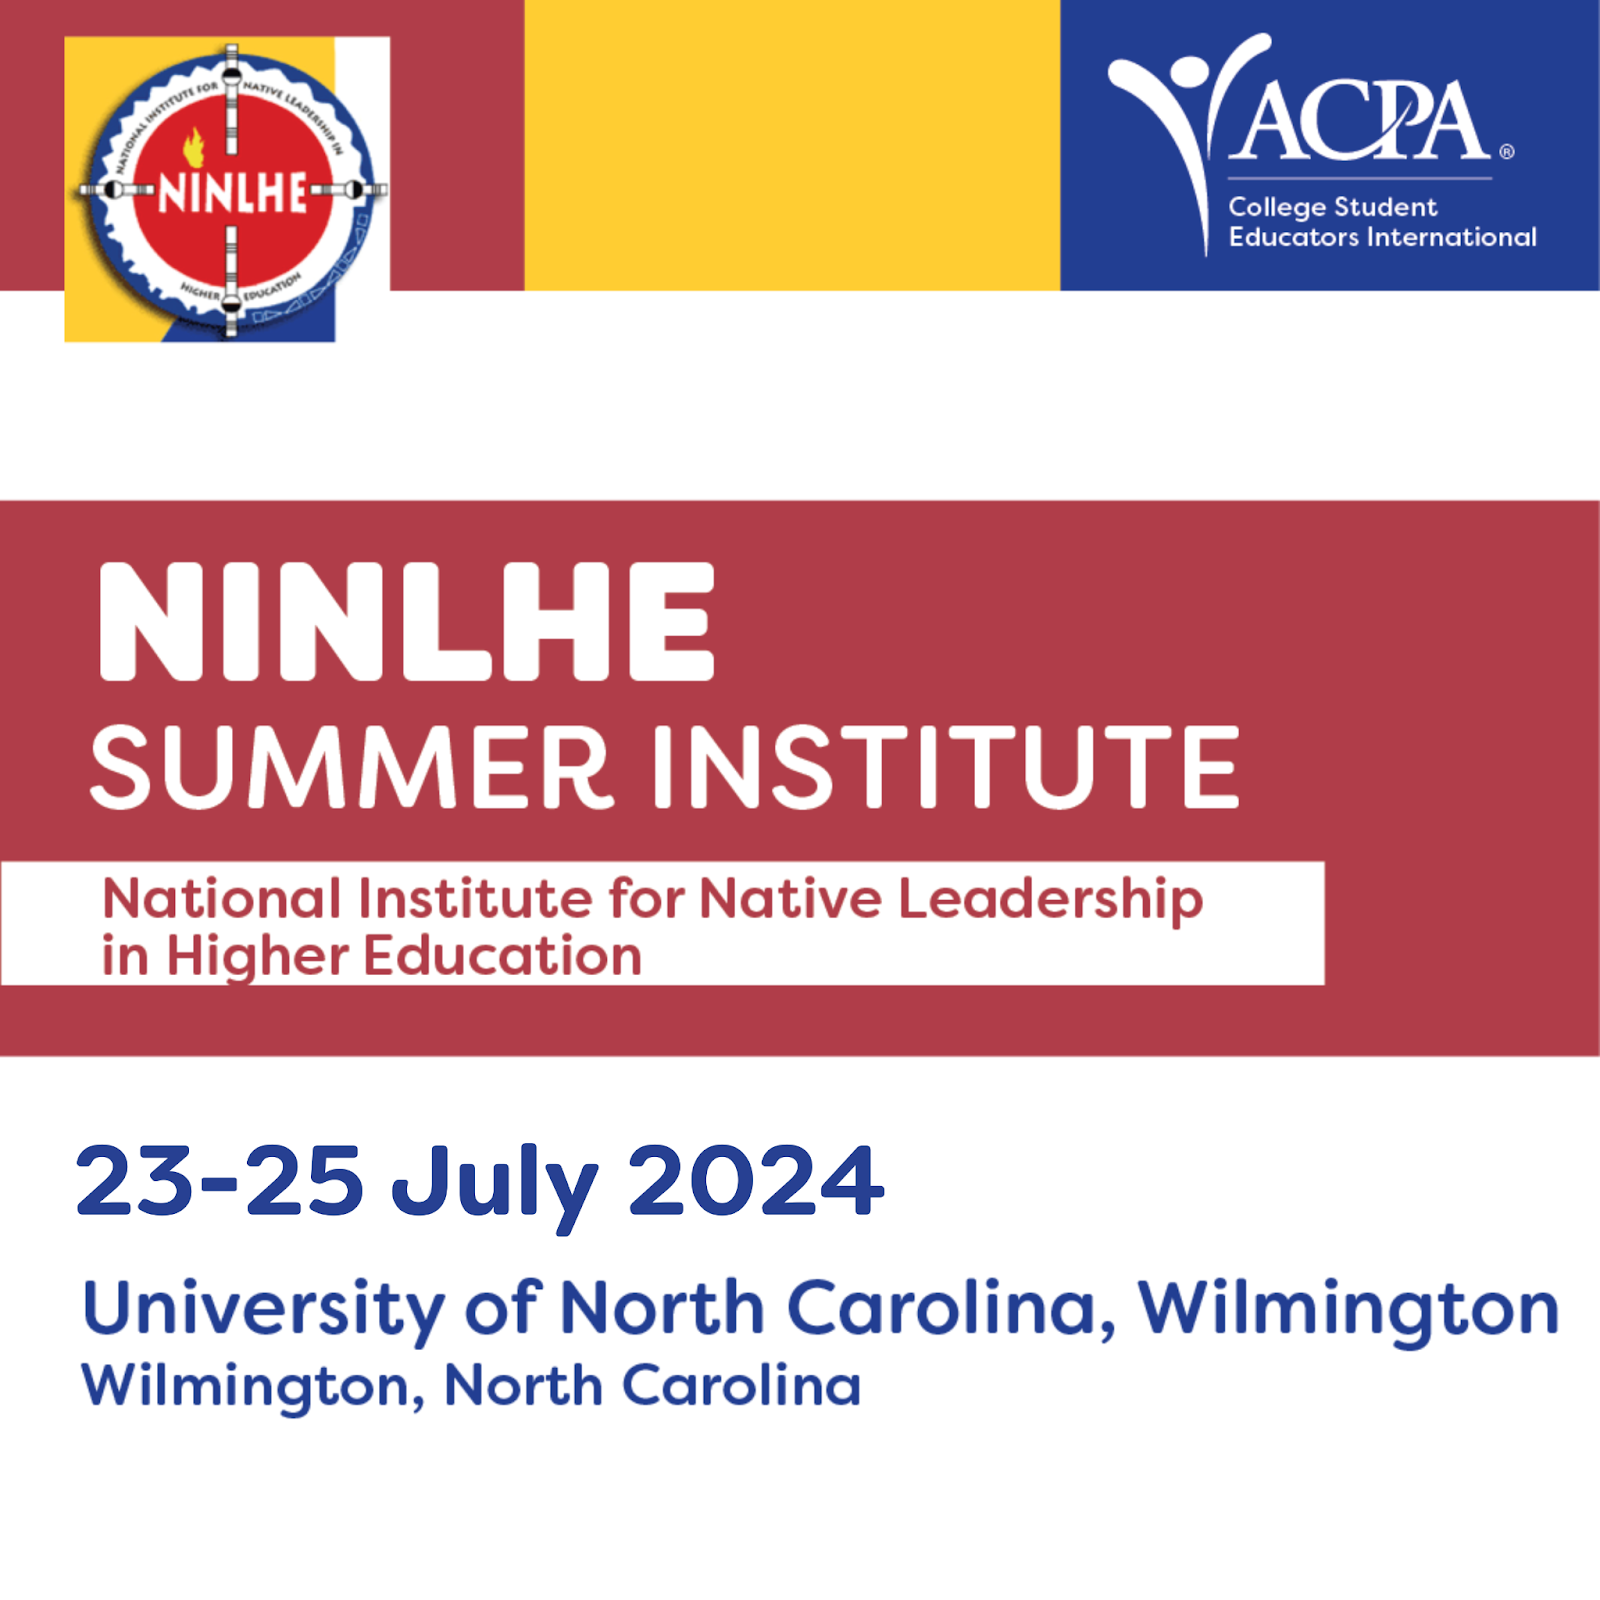 NINLHE, NAIC, ISAN Summer Institute. 25-29 July 2022 University of North Carolina at Wilmington